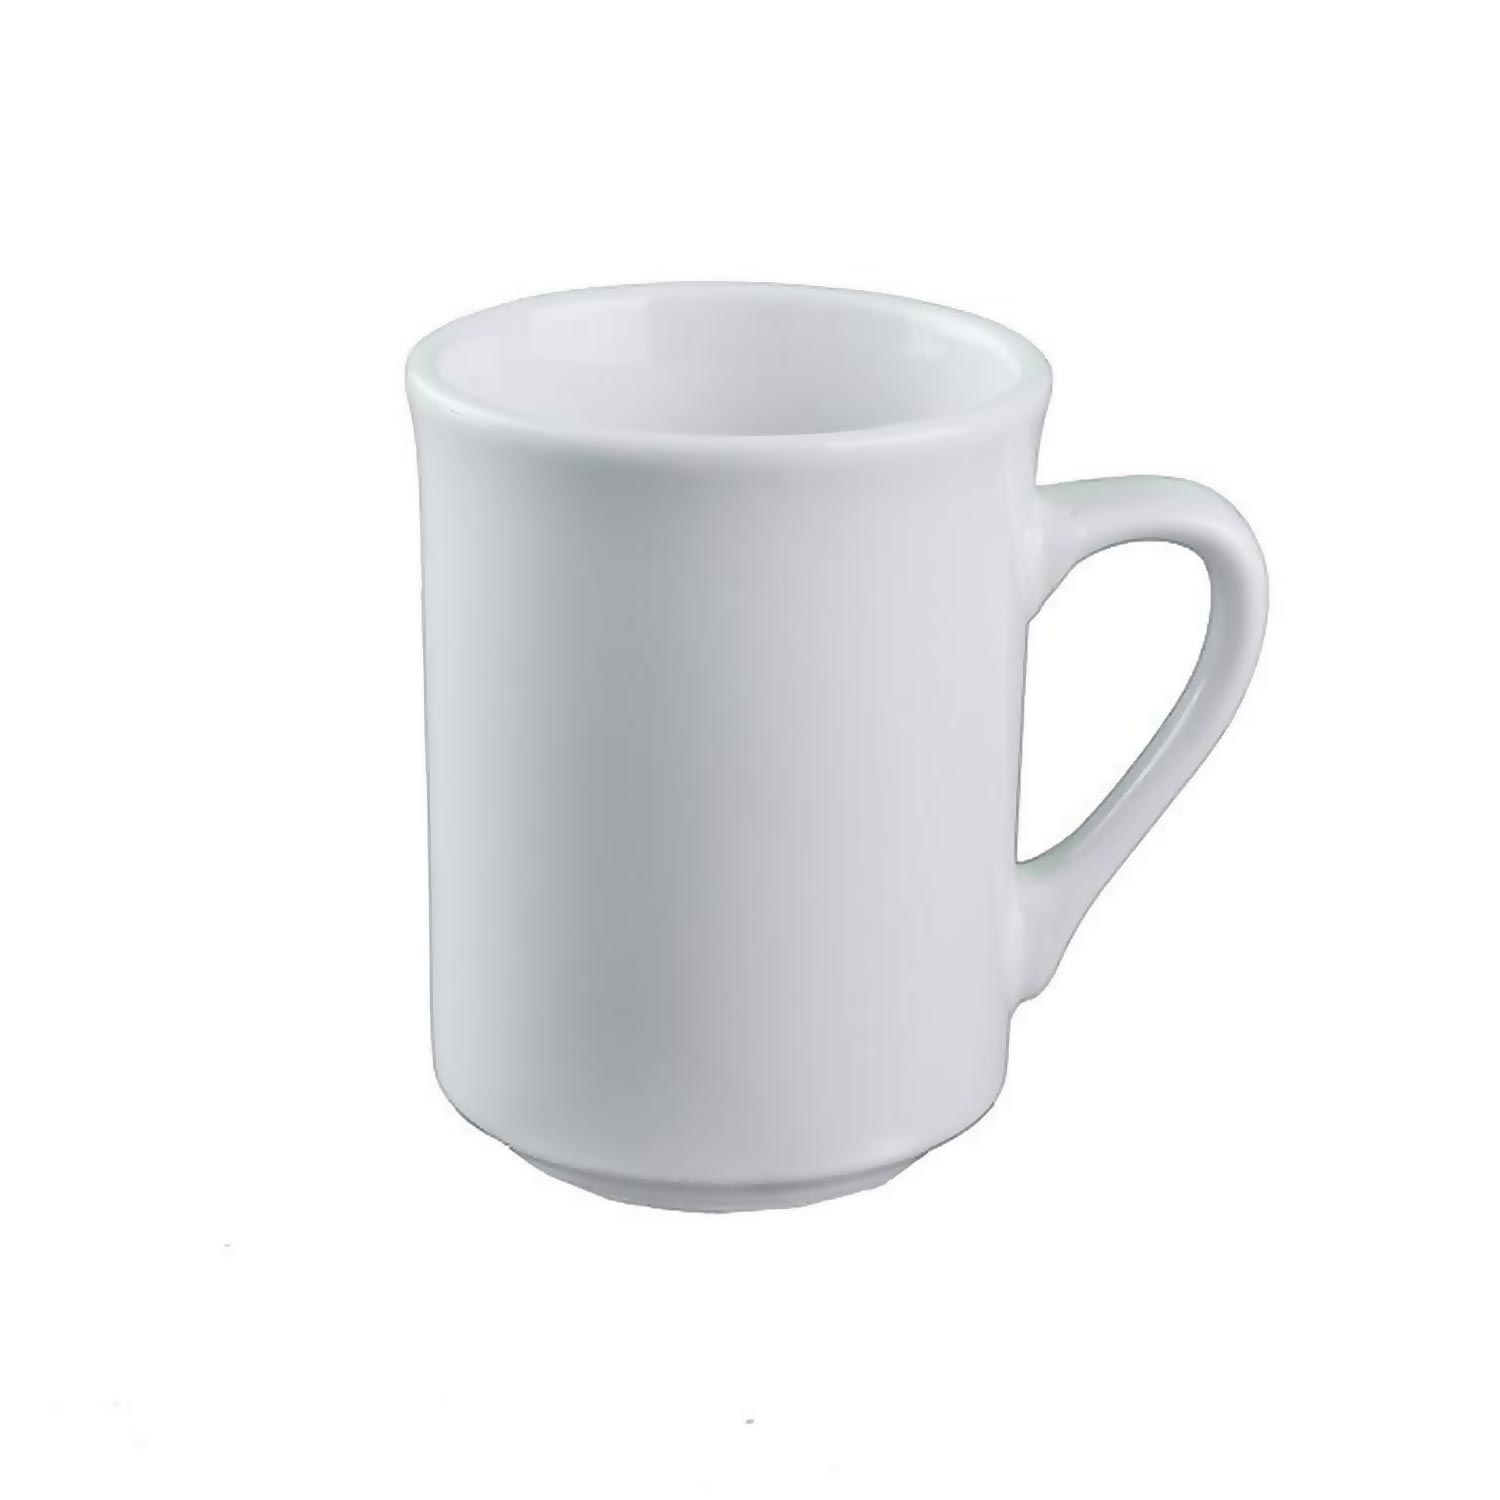 Tasse en porcelaine blanche 8 oz / 236 ml - Tasse à café et soucoupe